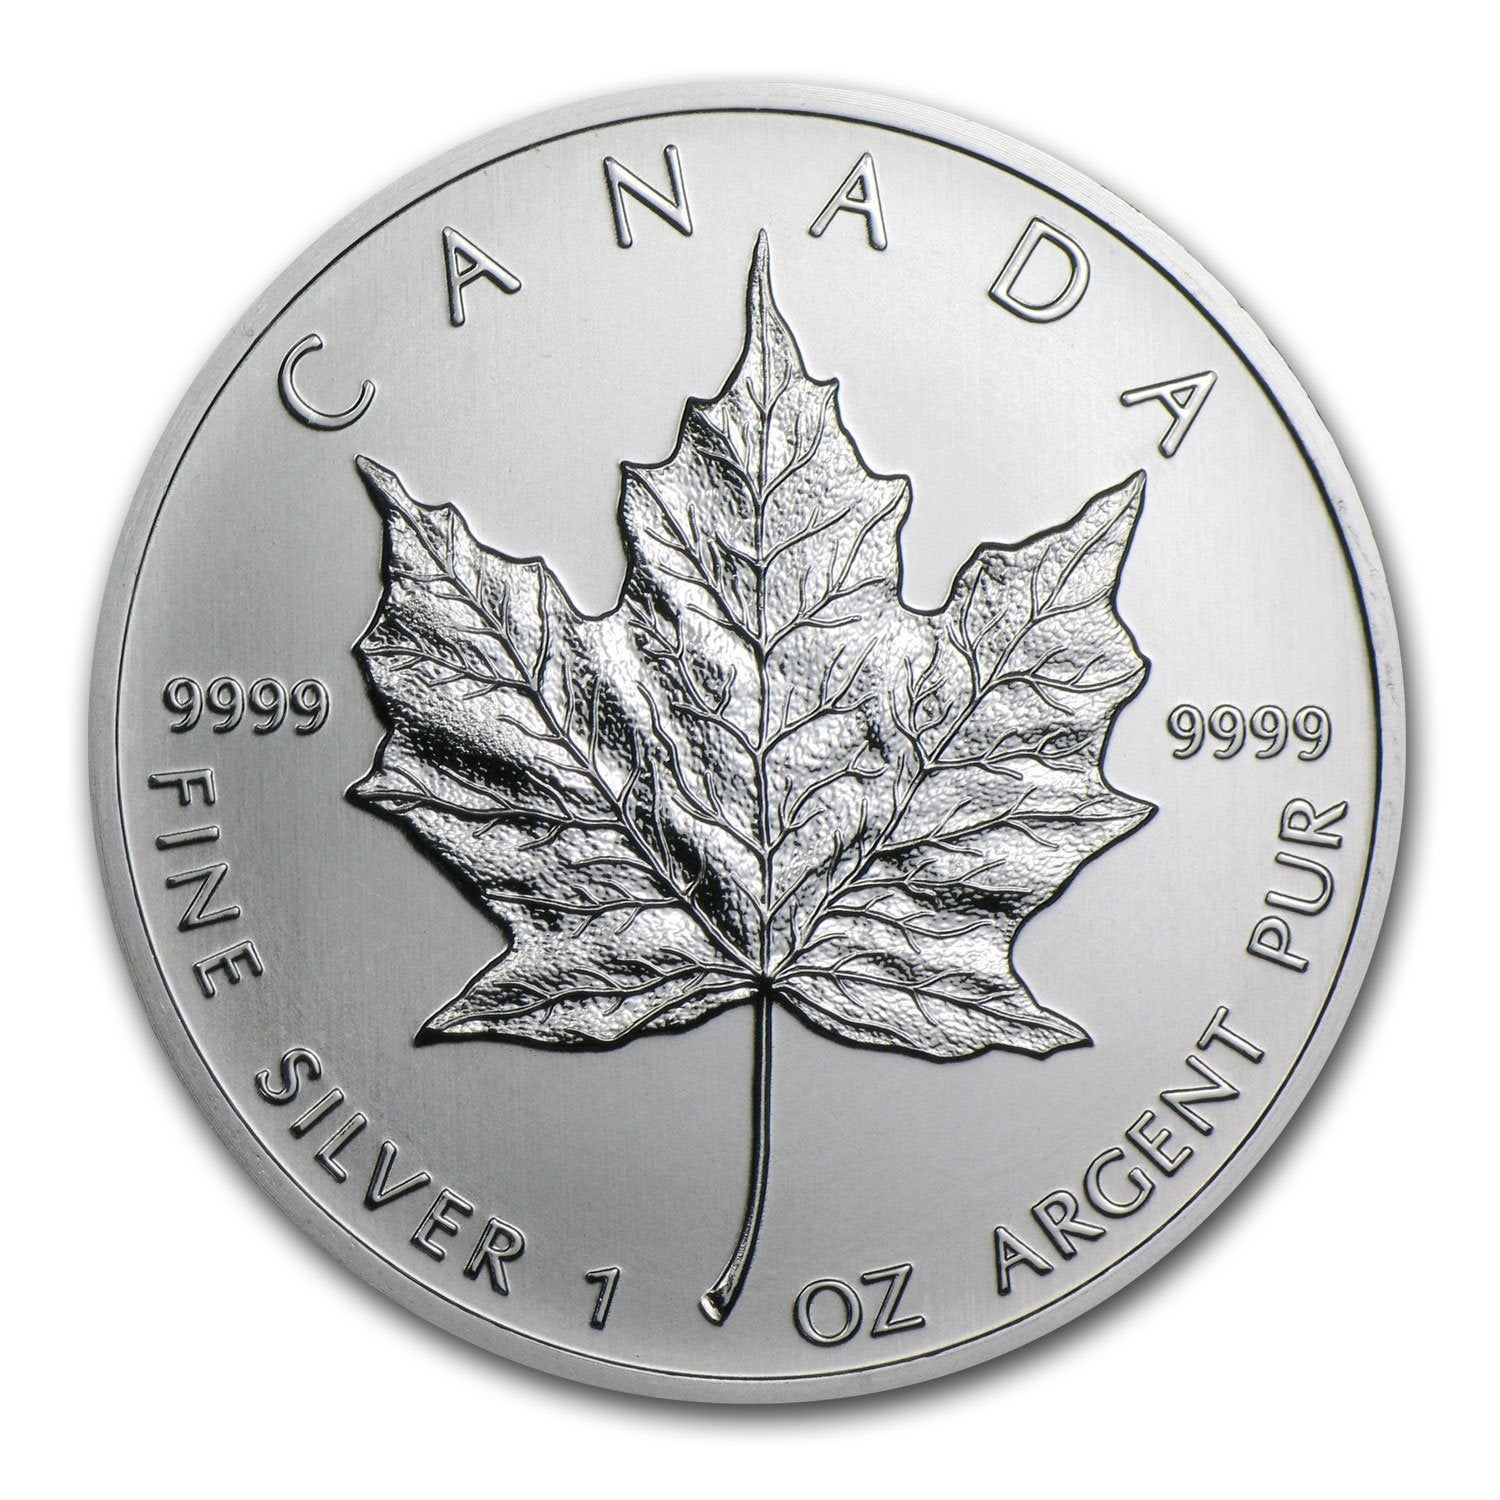 Moneta argento fior di conio 1oz Canada 5 dollars Maple Leaf 2001 - Gioielleria Capodagli